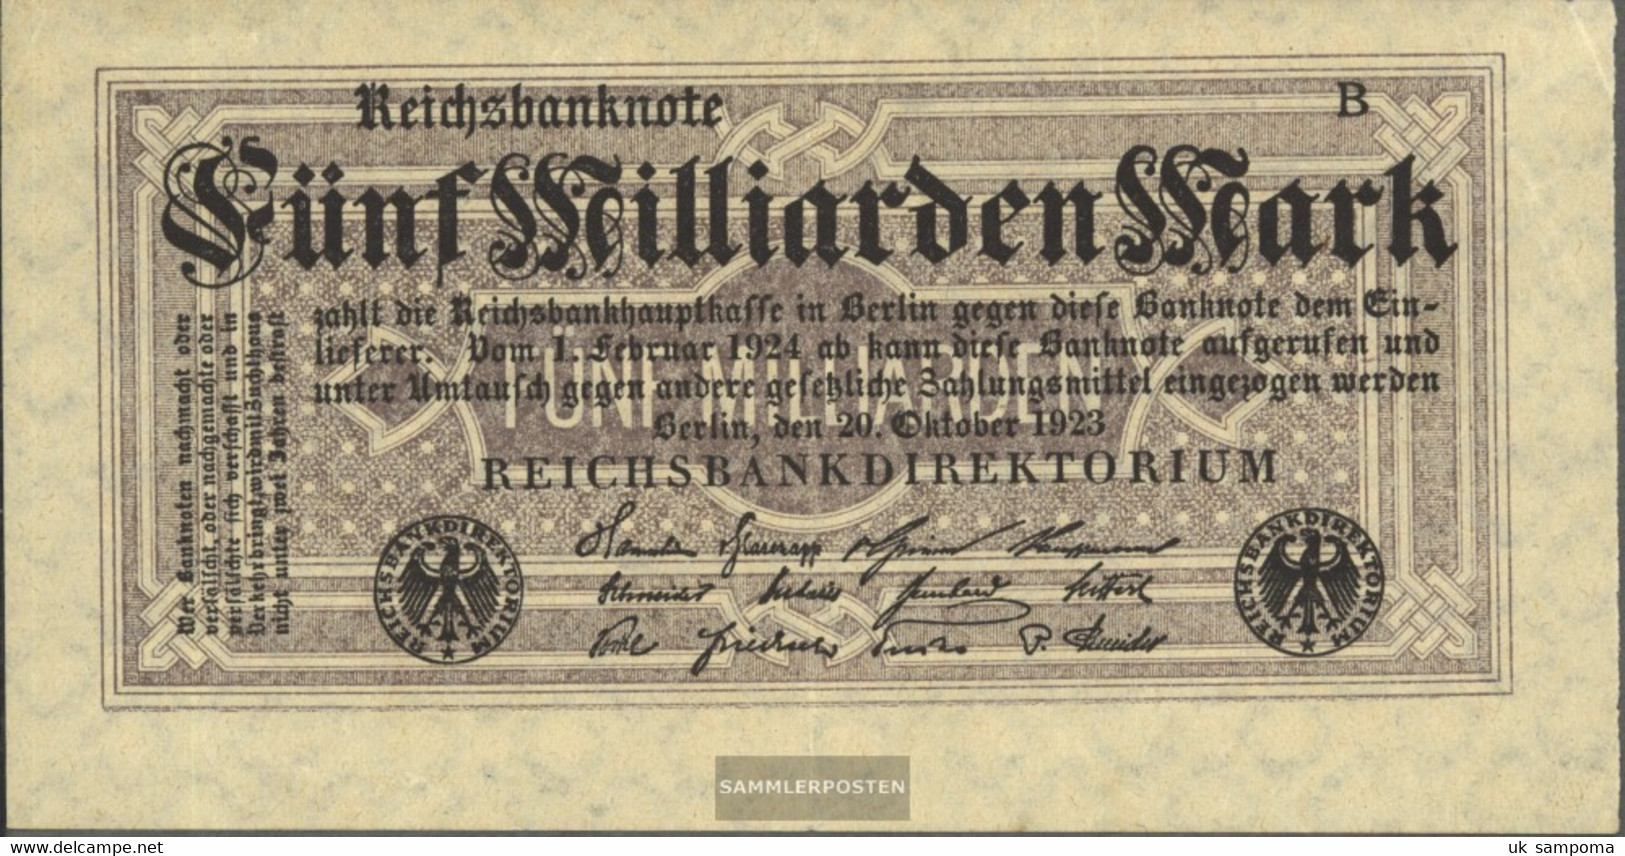 German Empire Rosenbg: 120d, Without Kontrollnummer With Firmenzeichen Used (III) 1923 5 Billion Mark - 5 Mrd. Mark